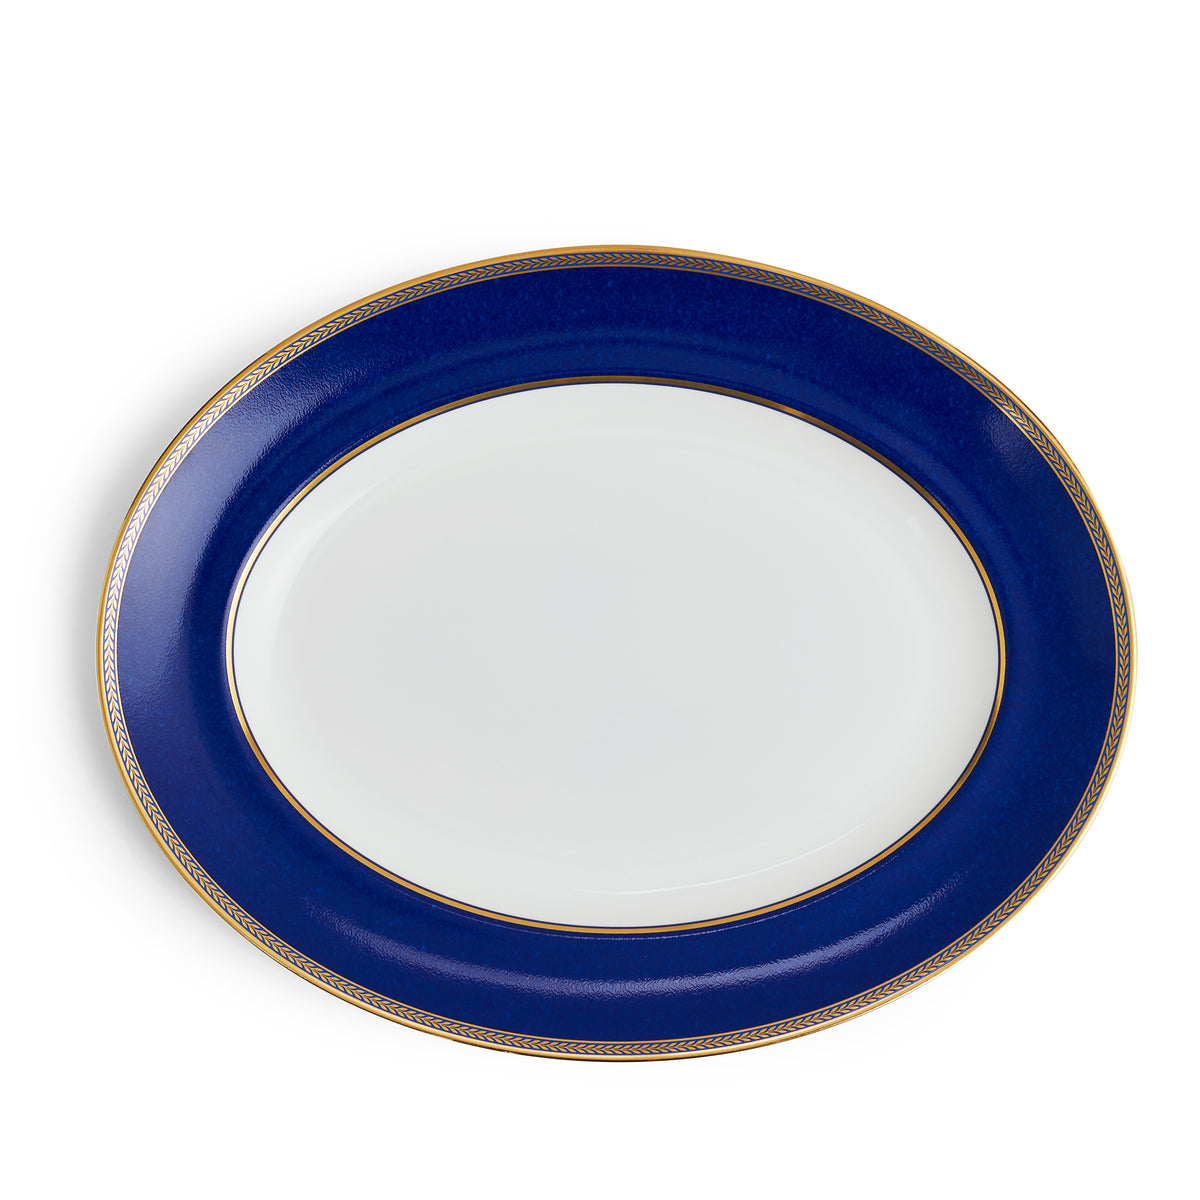 Renaissance Gold Oval Platter 13.75"